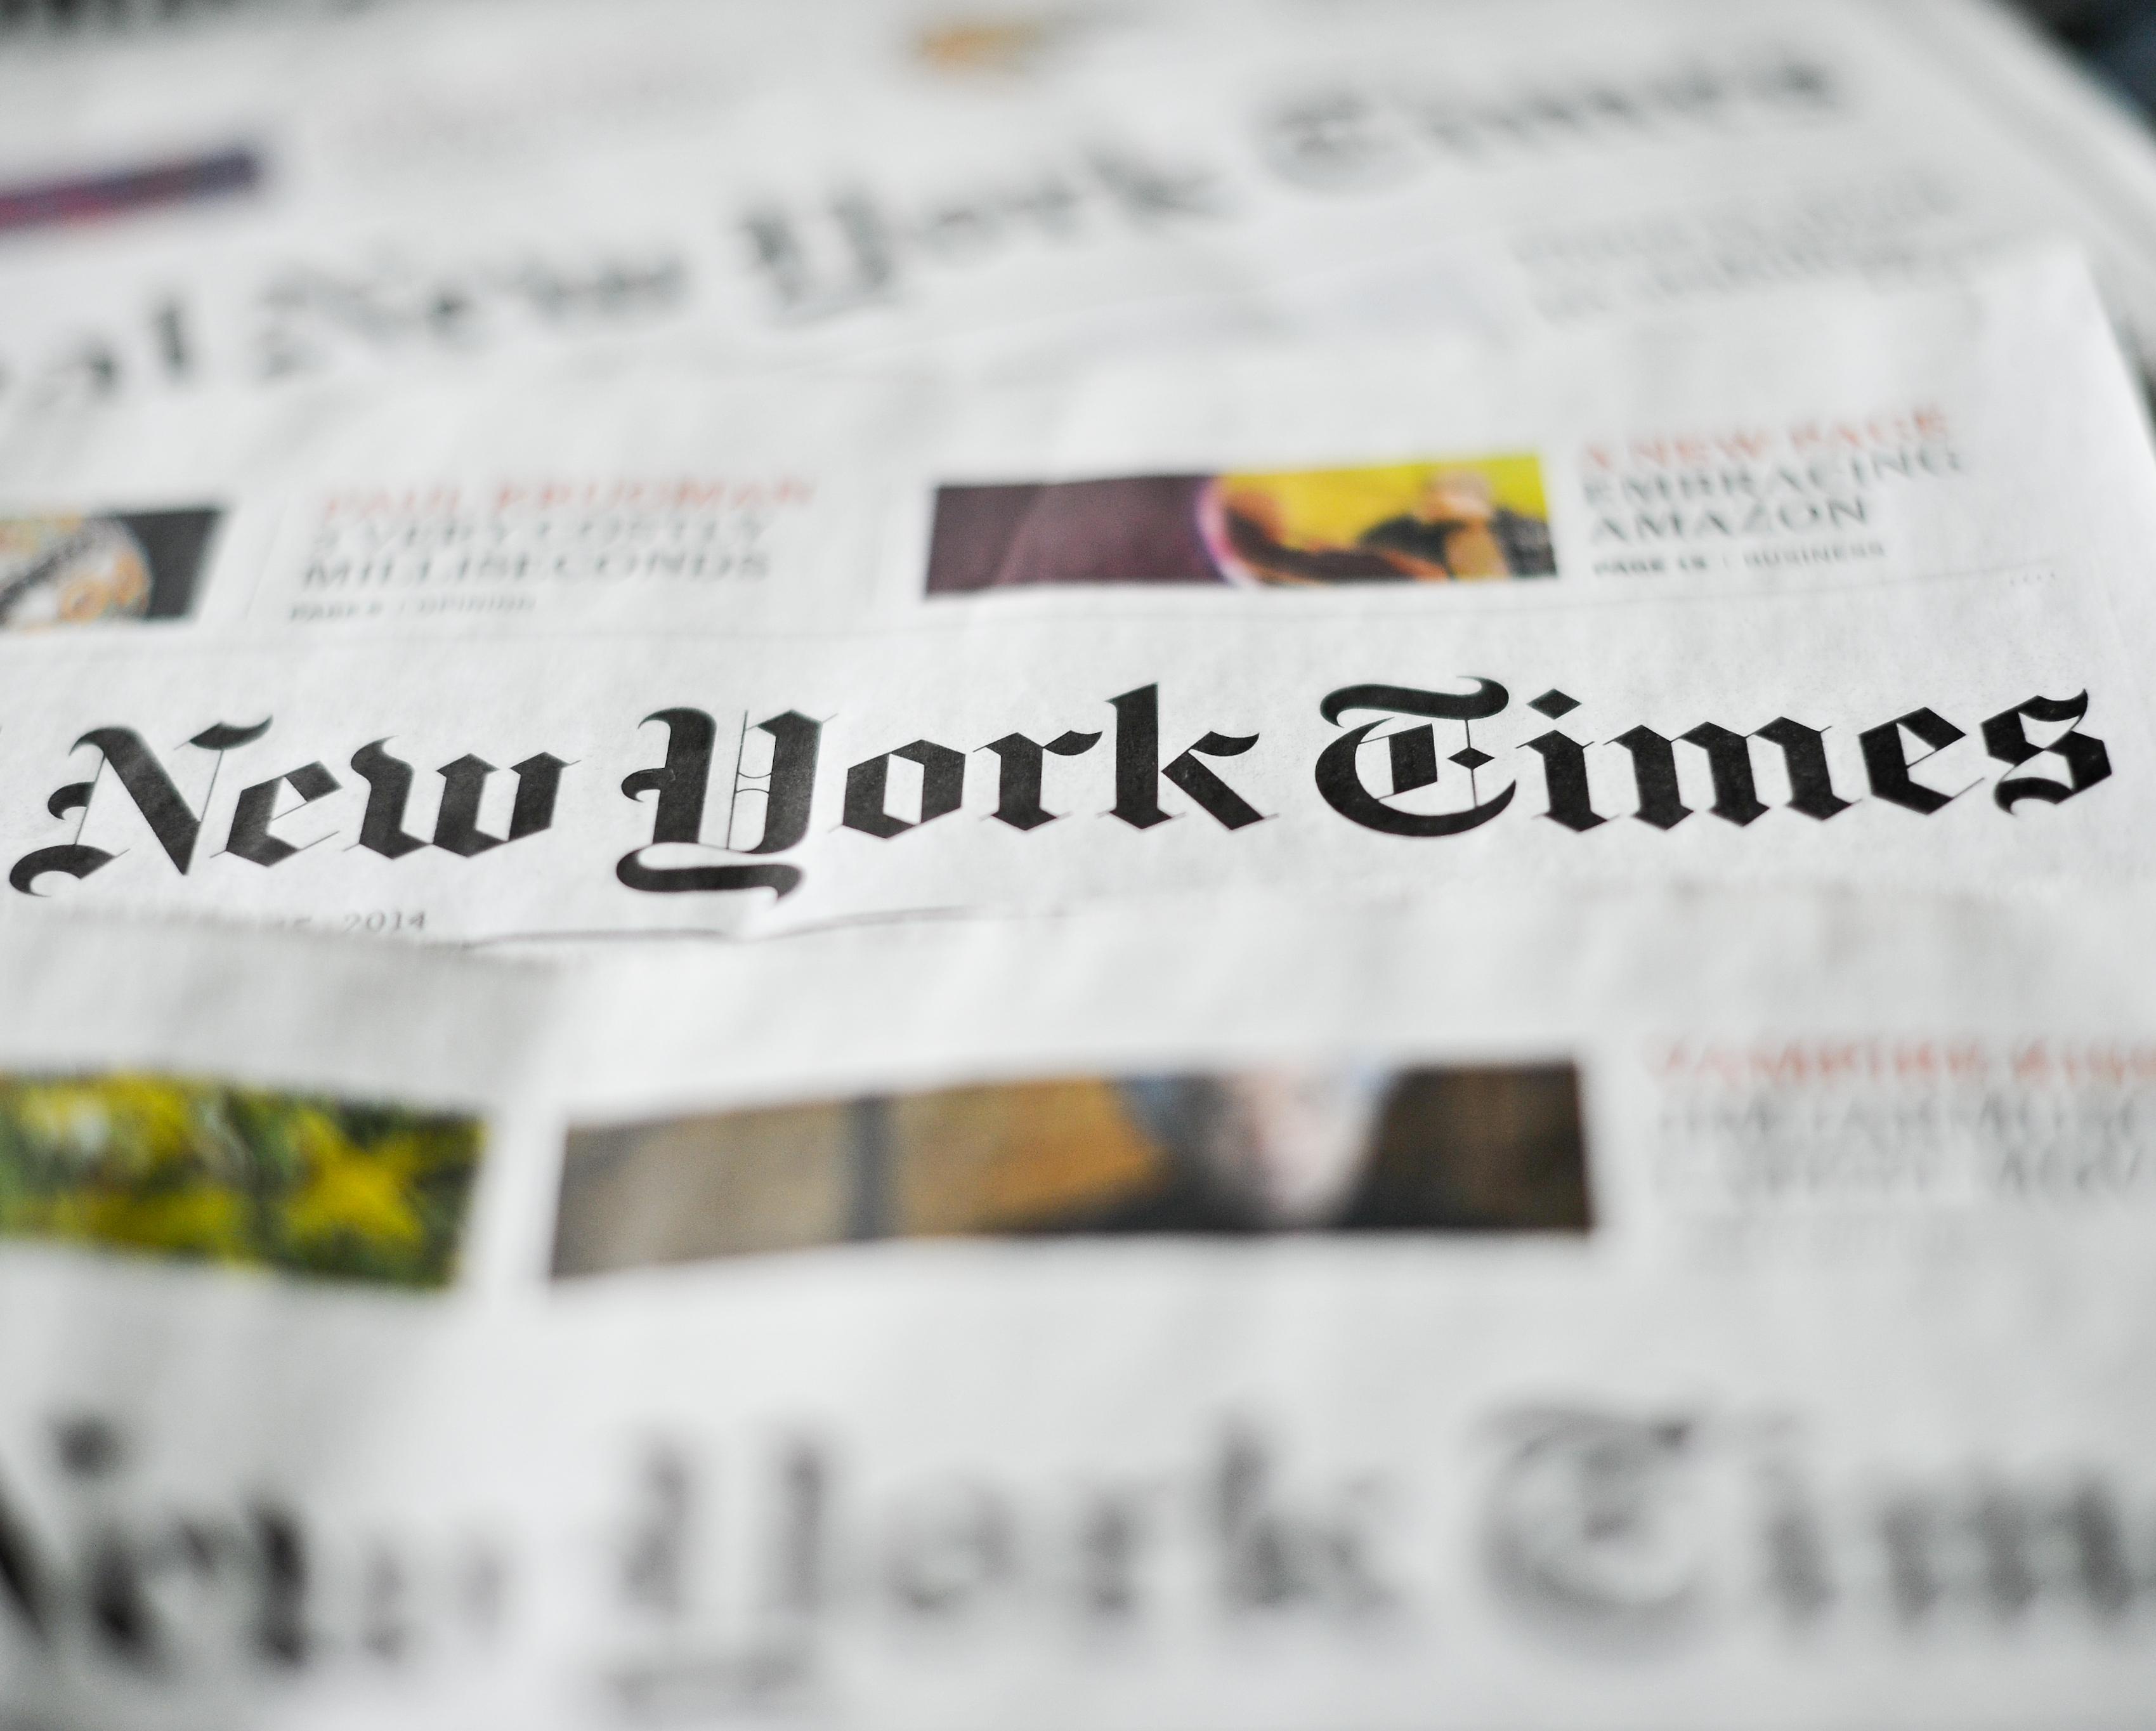 'The New York Times' demanda Microsoft i OpenAI per l'ús dels seus texts sense permís